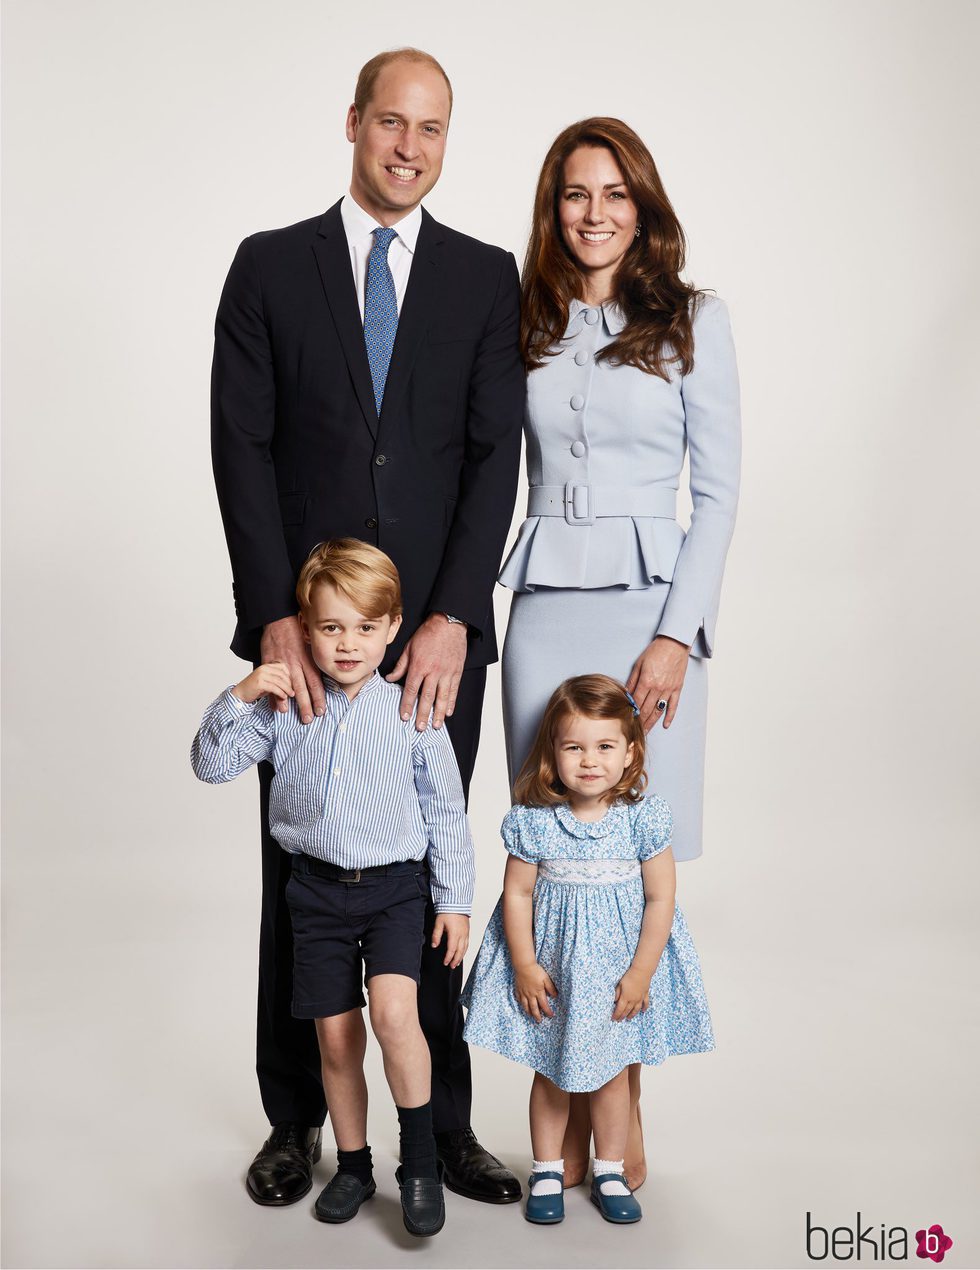 Los Duques de Cambridge, el Príncipe Jorge y la Princesa Carlota felicitan la Navidad 2017